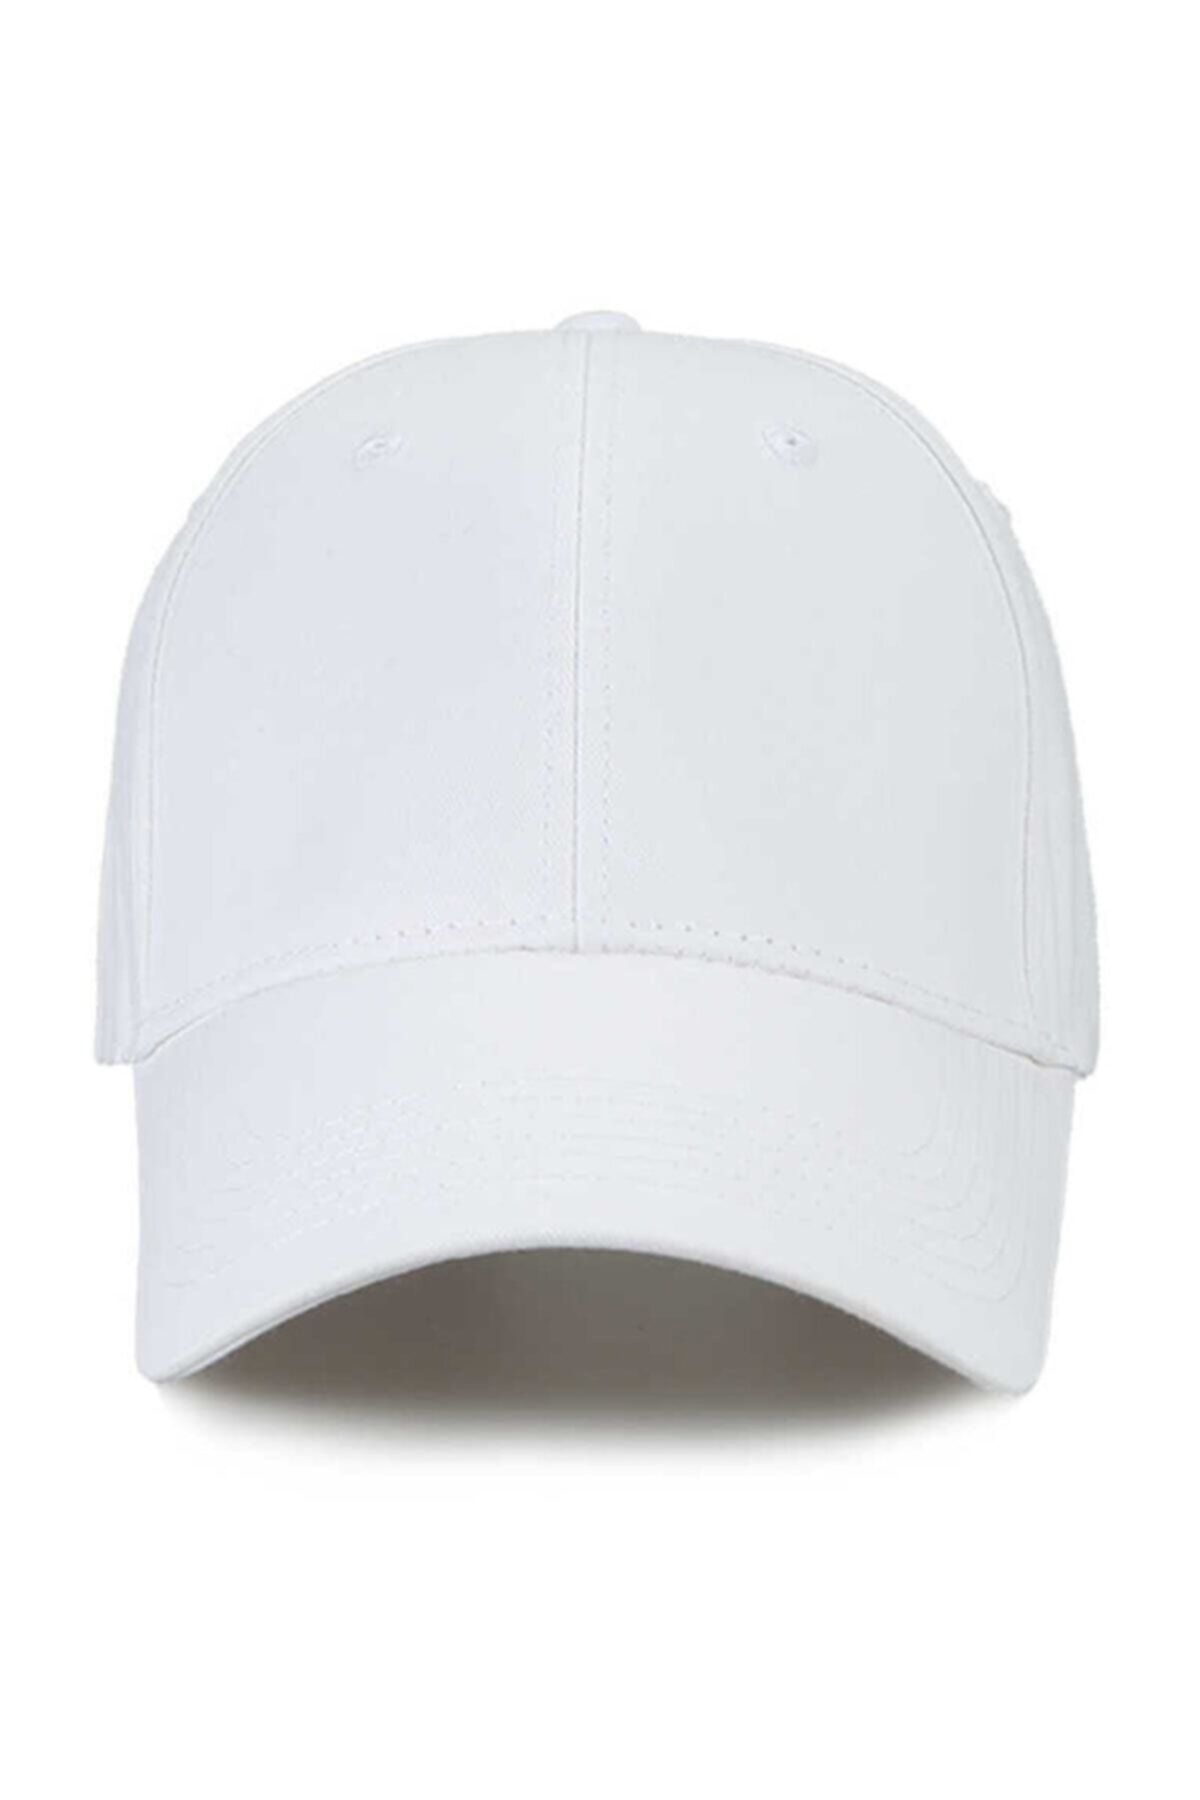 Yazlık Beyzbol Düz Ve Çeşitli Renklerde Şapka ,kep